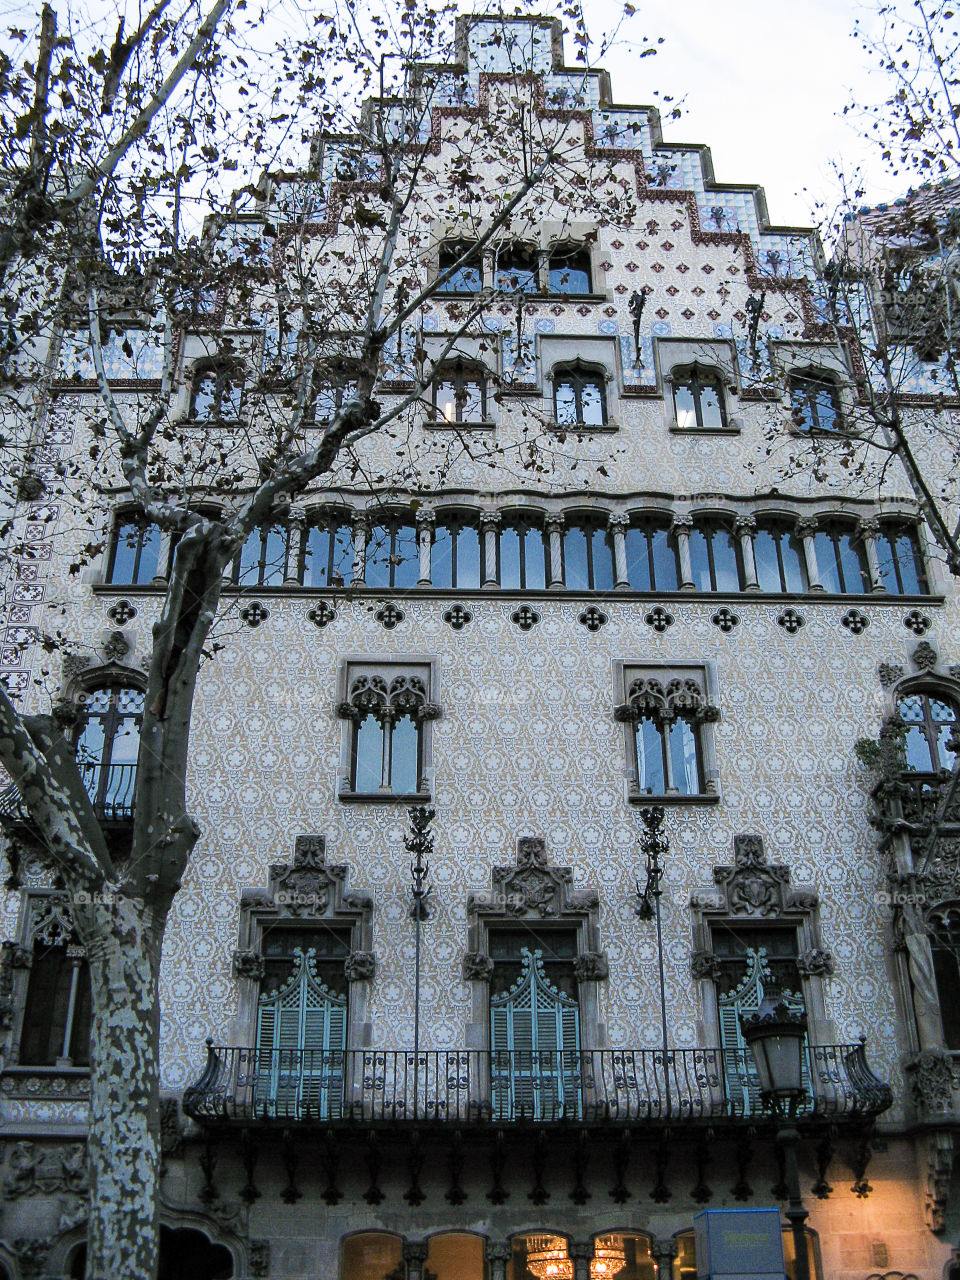 Casa Amatller by Puig i Cadafalch